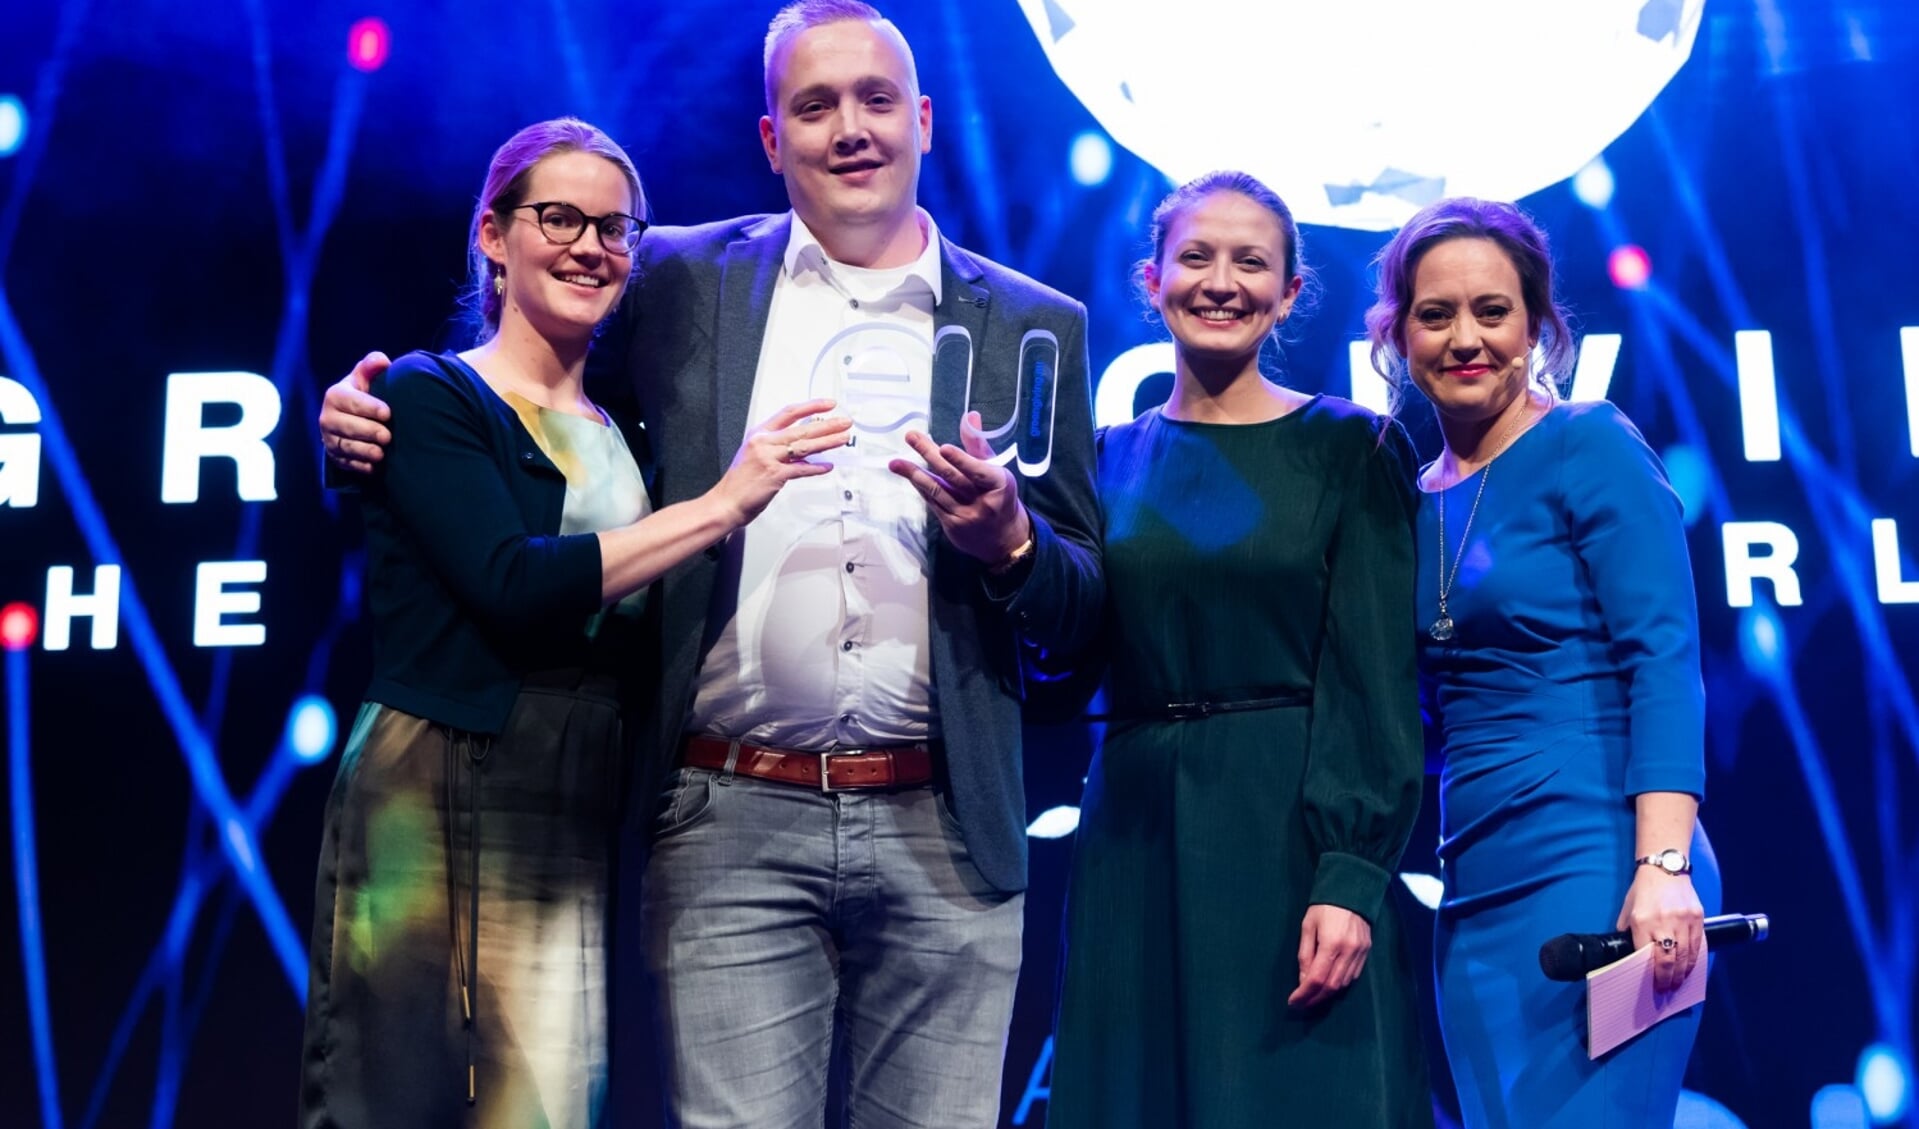 Job en Jojanneke van Greengiving nemen de eerste prijs in ontvangst op het .EU Web Awards Gala.